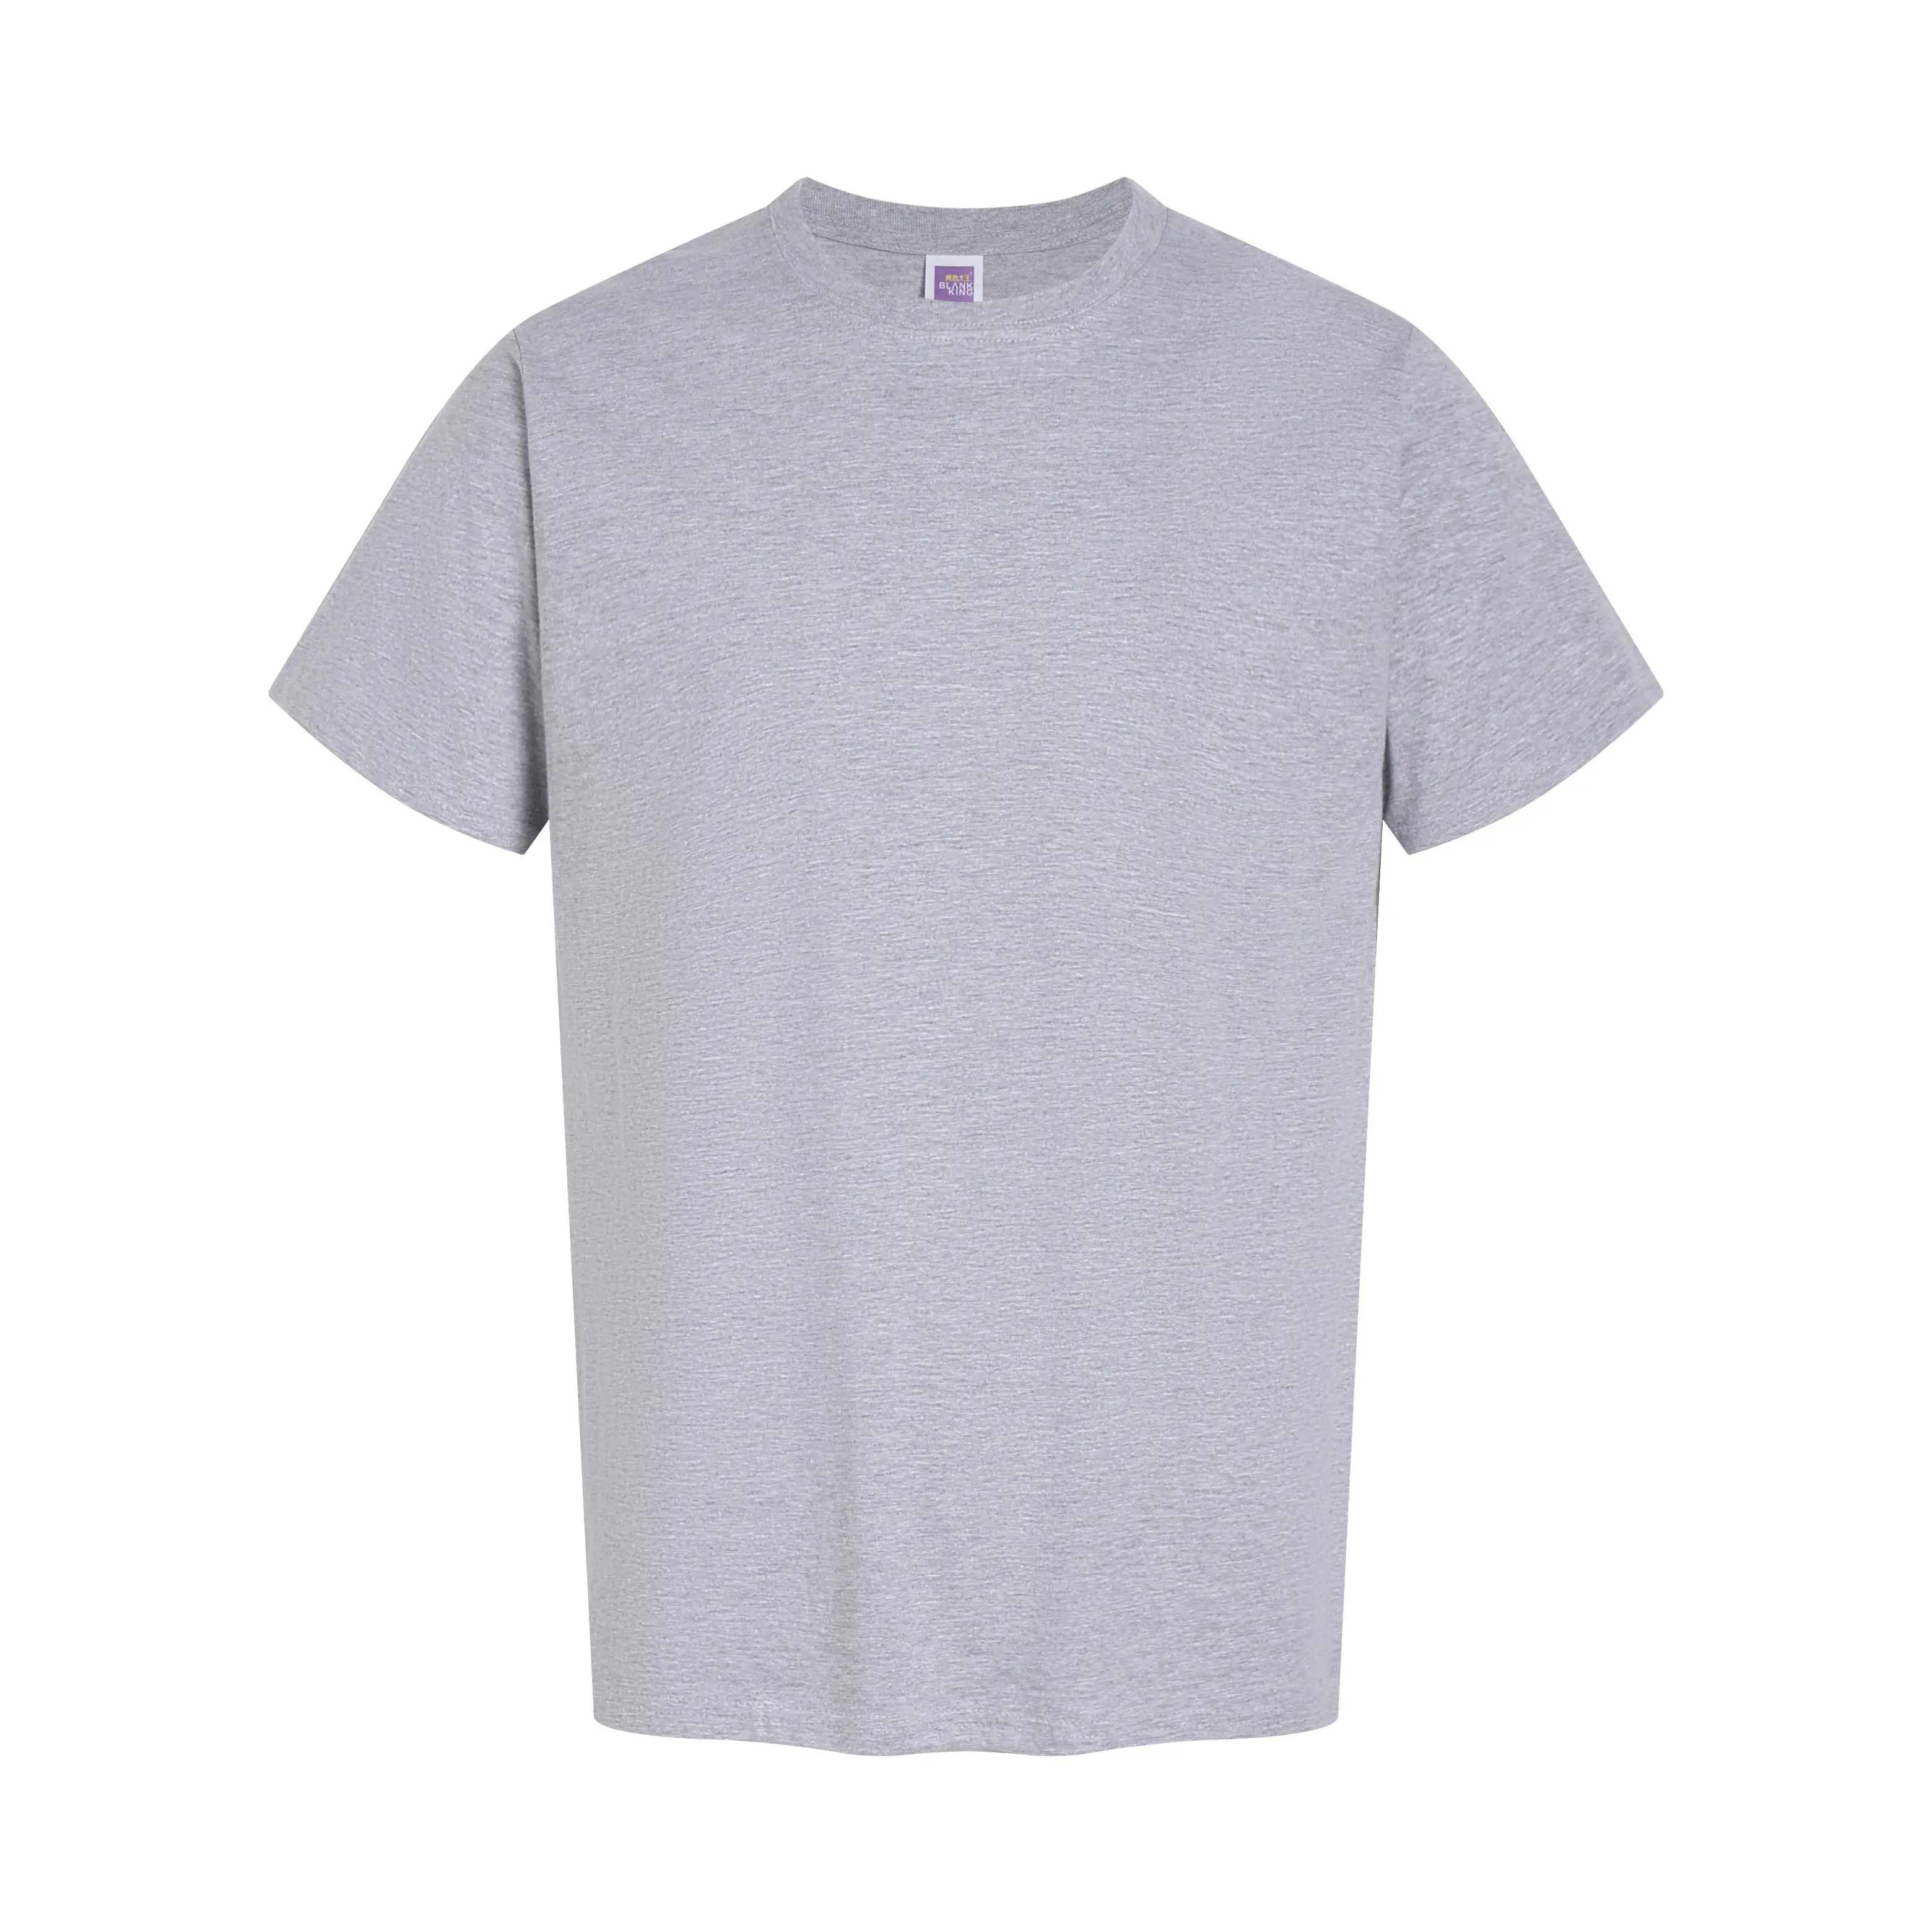 Camiseta con logotipo personalizado, camisetas extragrandes de algodón 100% para hombre, camiseta de manga corta con cuello redondo